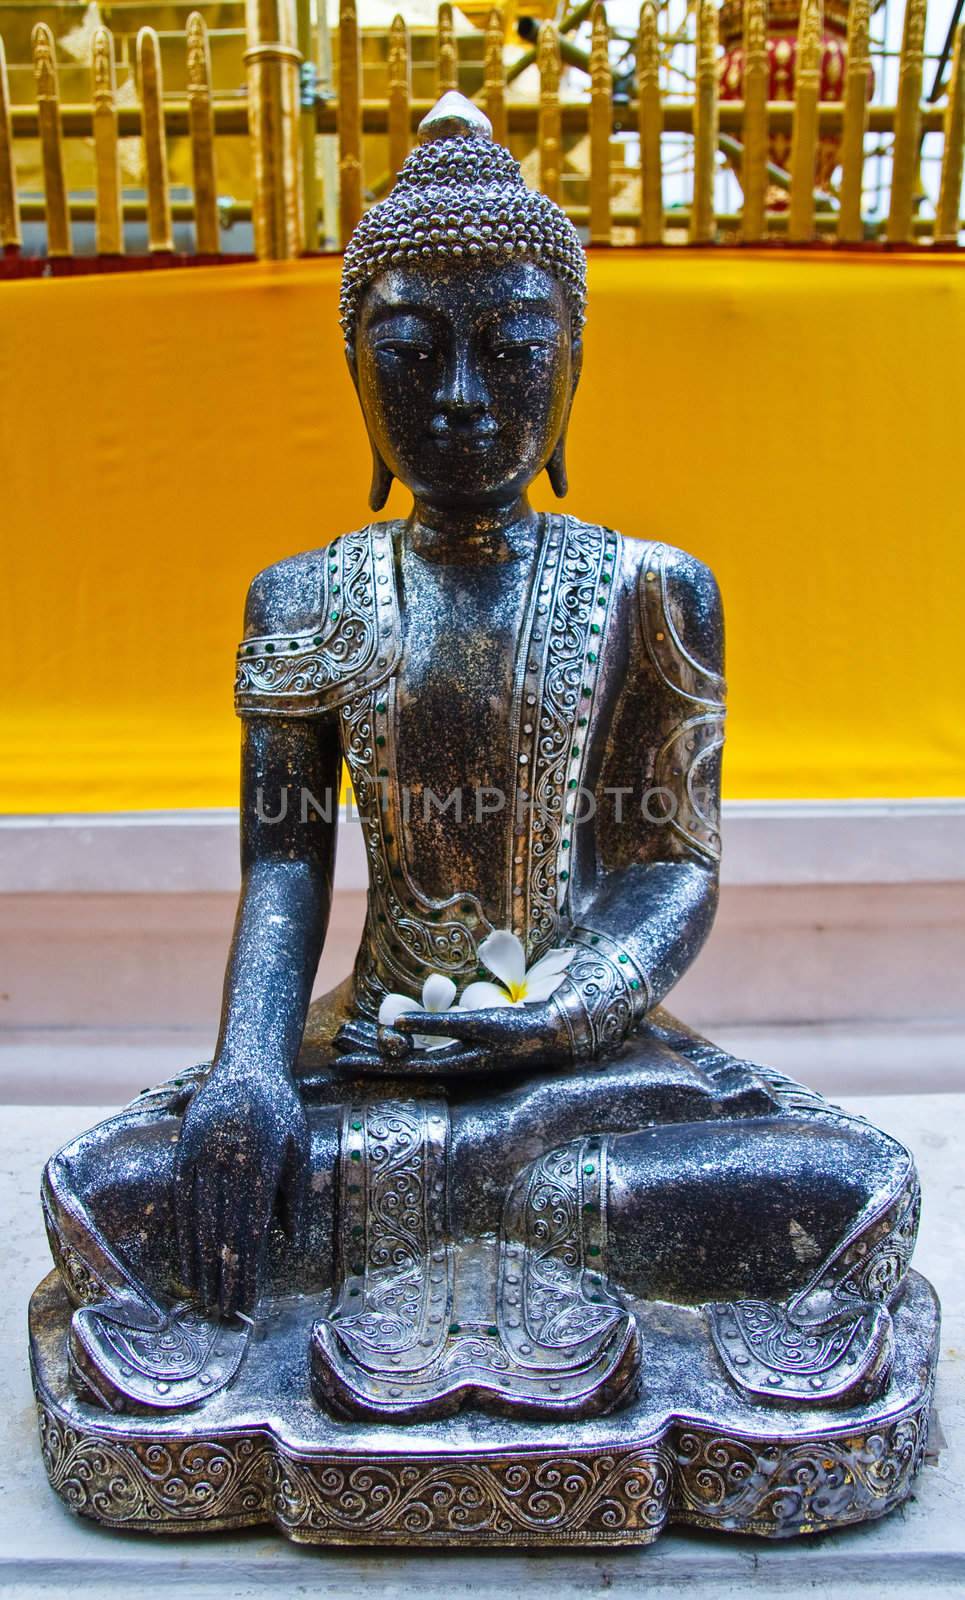 Shiny black Buddha image